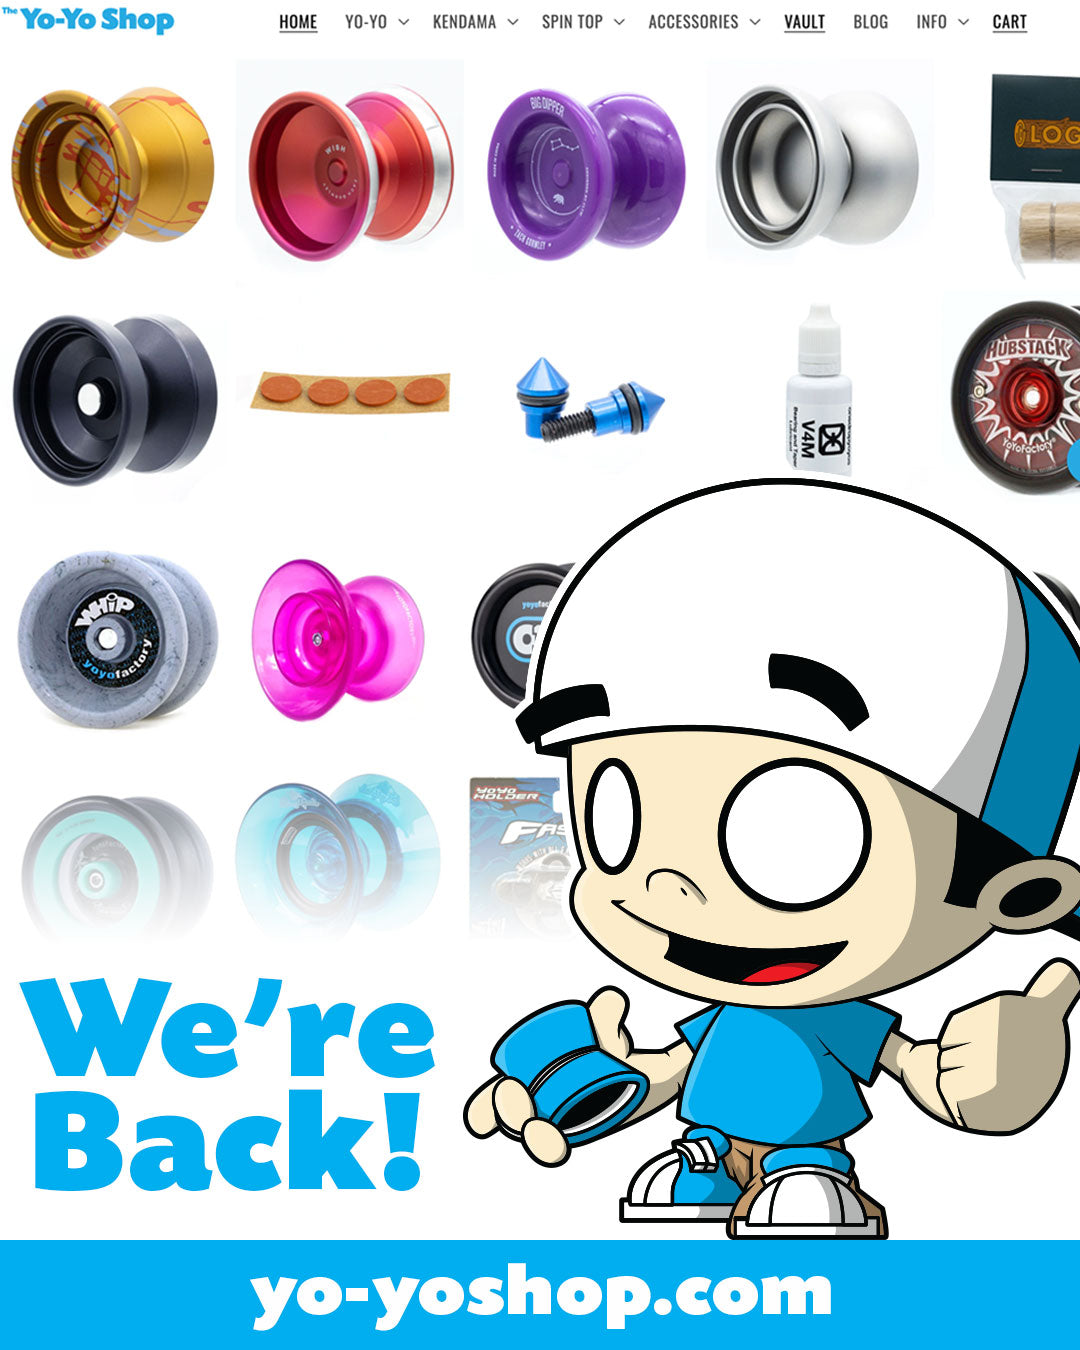 The Yo-Yo Shop is Back!